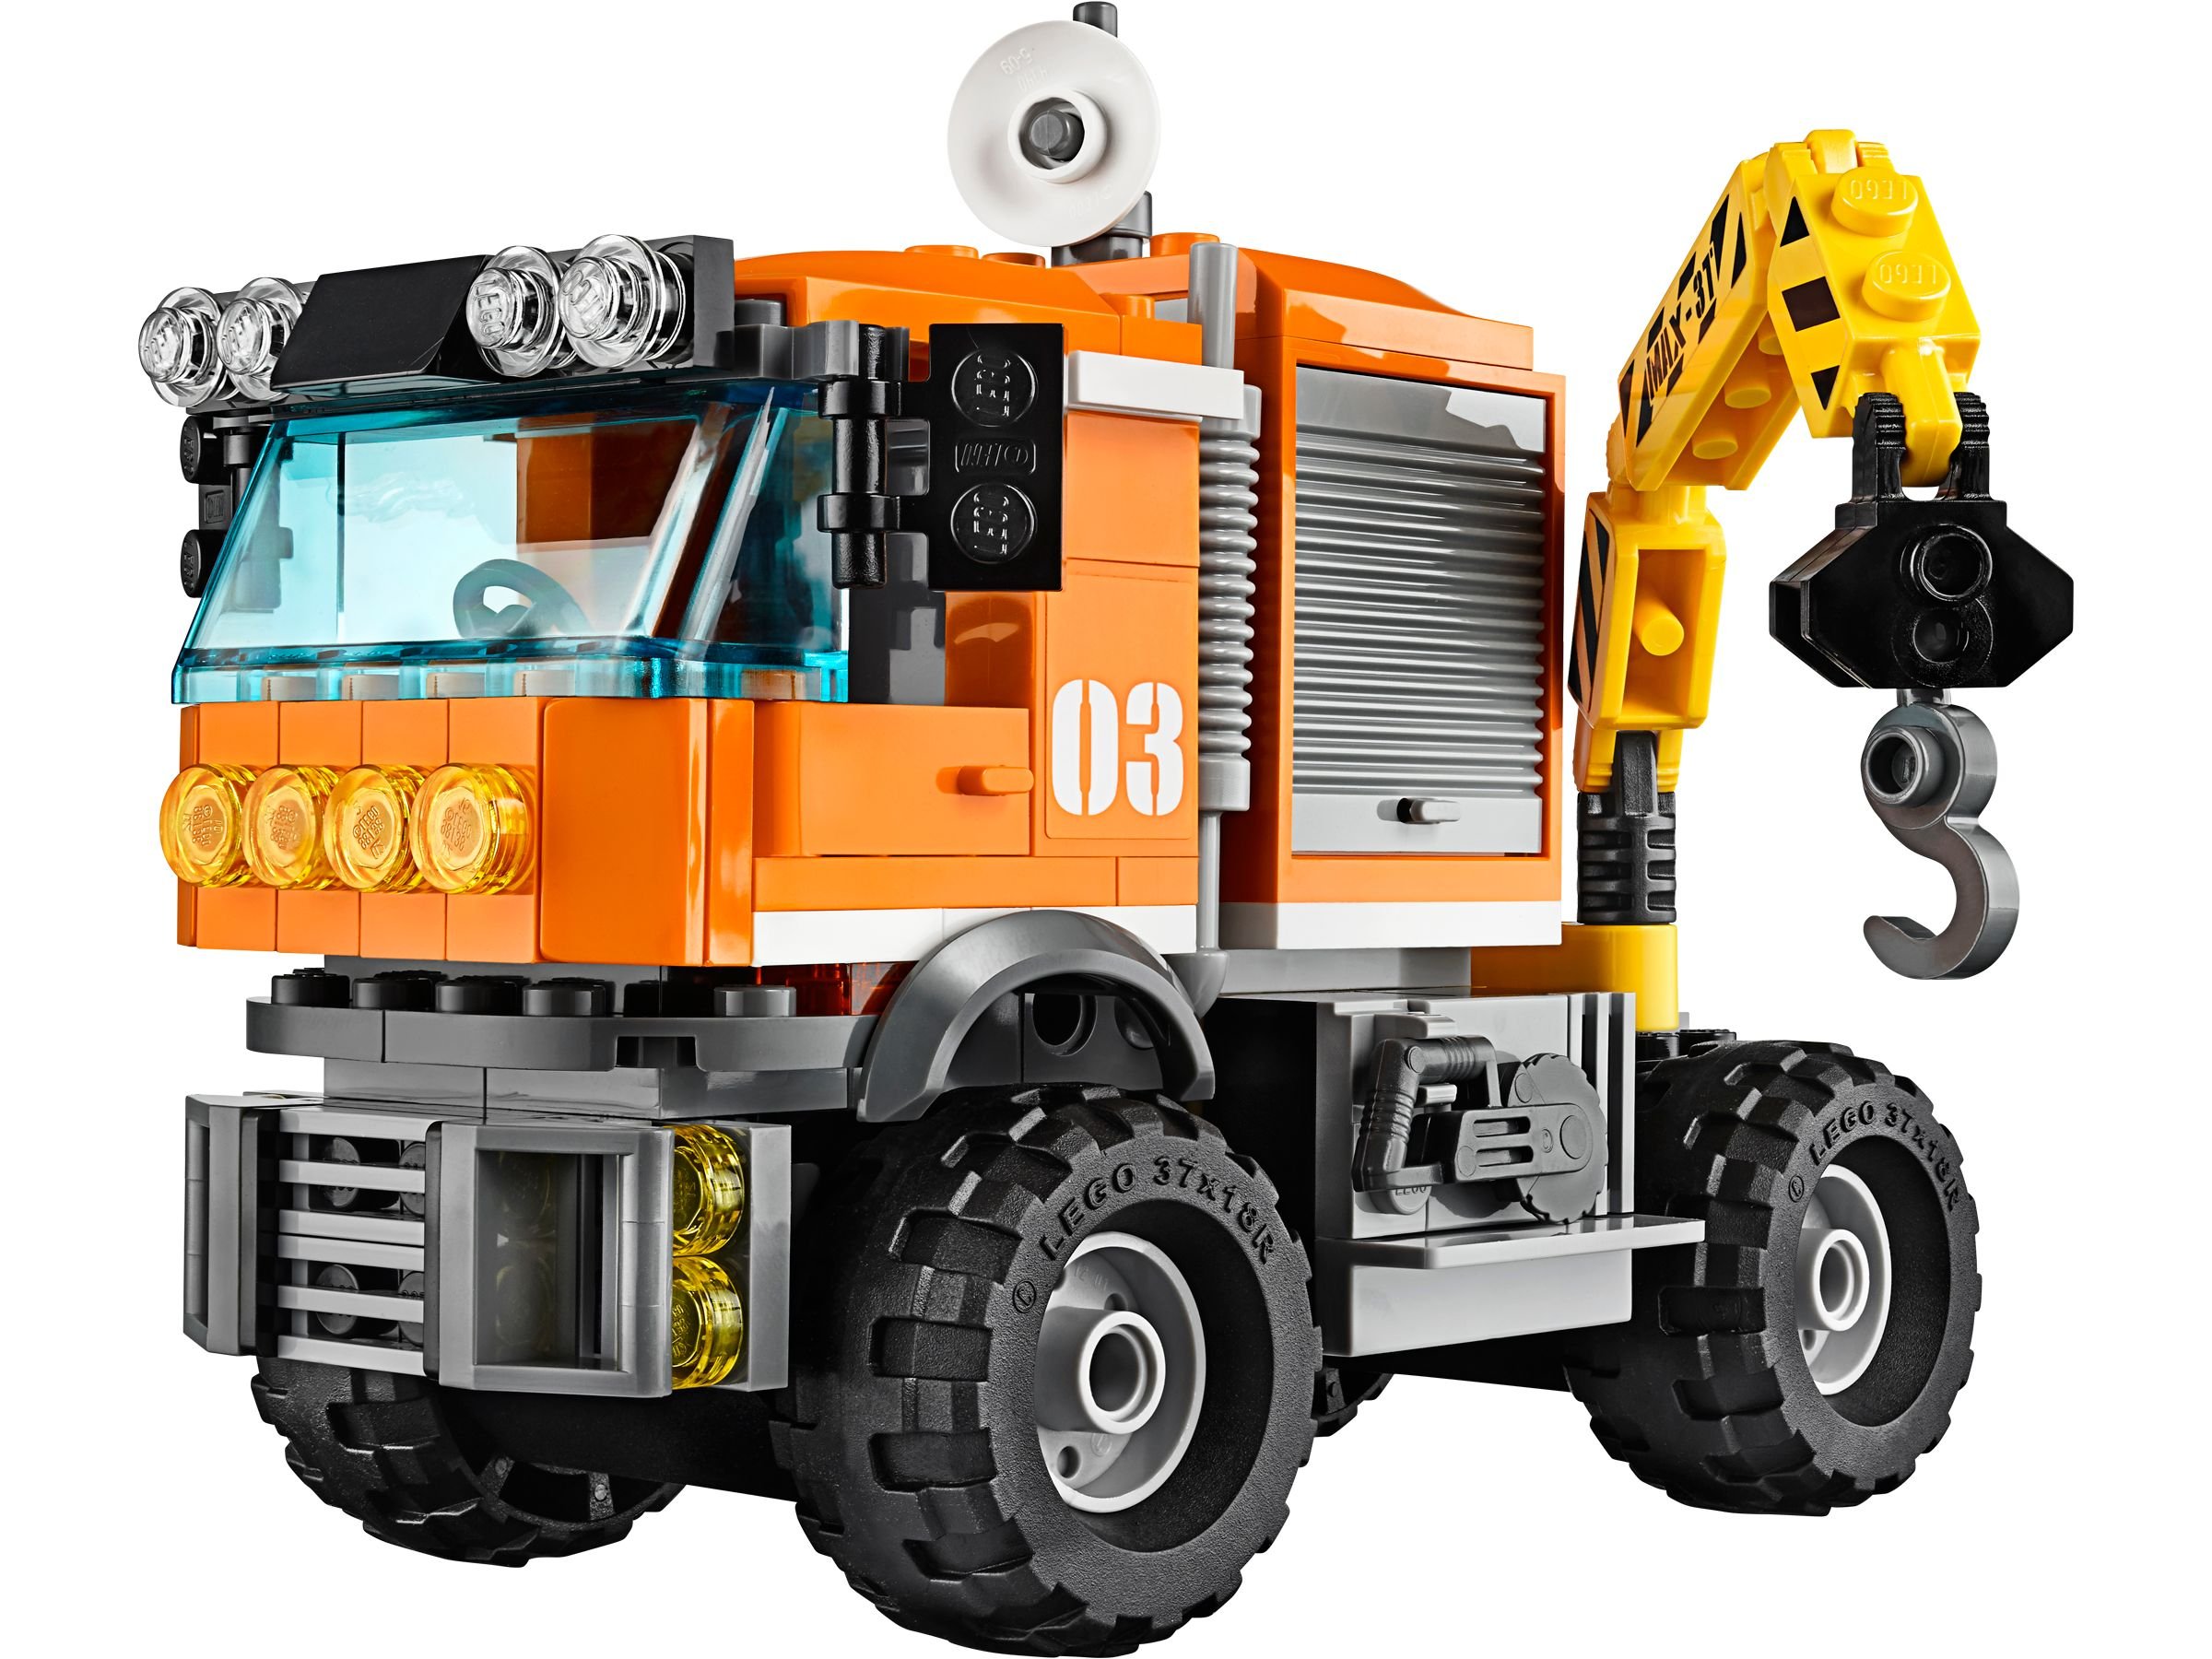 LEGO City 60035 Arktis-Truck LEGO_60035_alt2.jpg